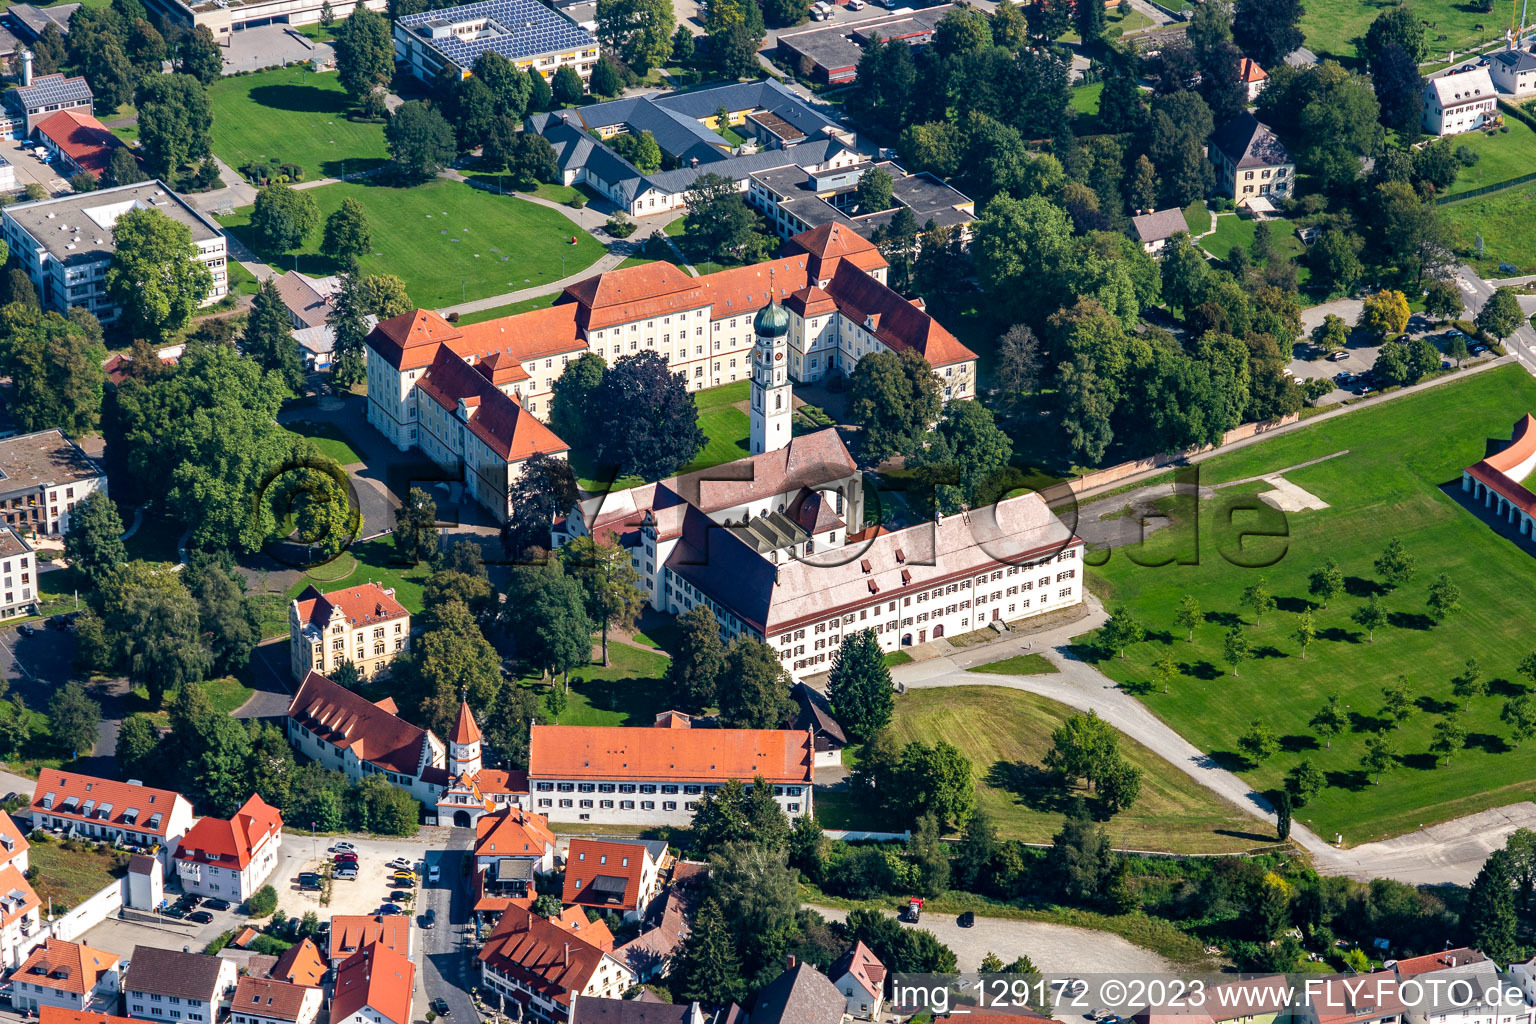 Complexe de bâtiments monastiques à le quartier Roppertsweiler in Bad Schussenried dans le département Bade-Wurtemberg, Allemagne d'en haut